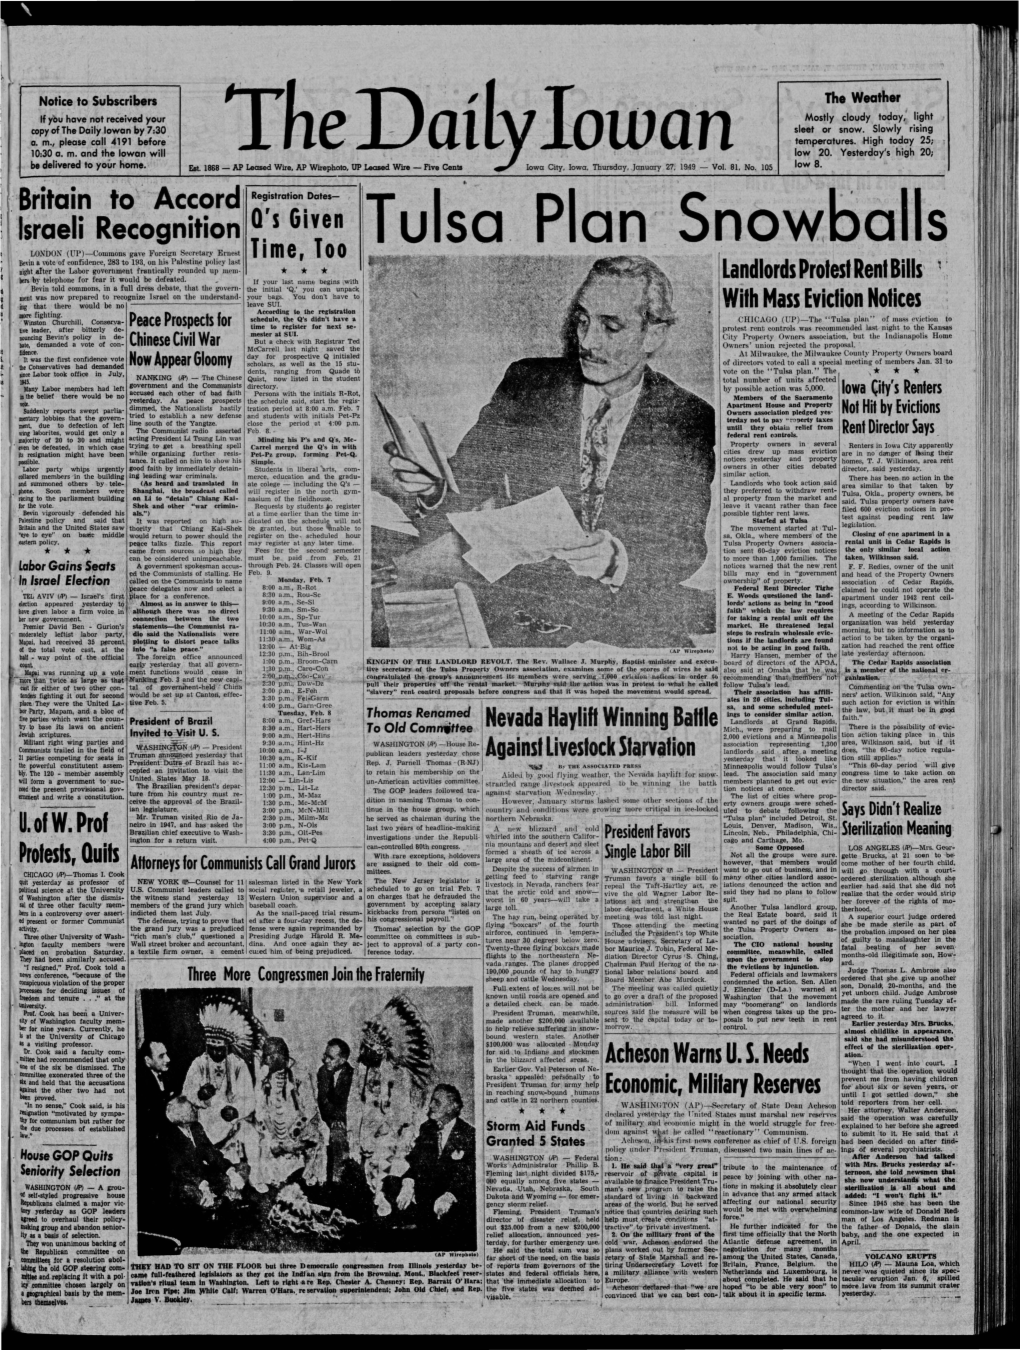 Daily Iowan (Iowa City, Iowa), 1949-01-27